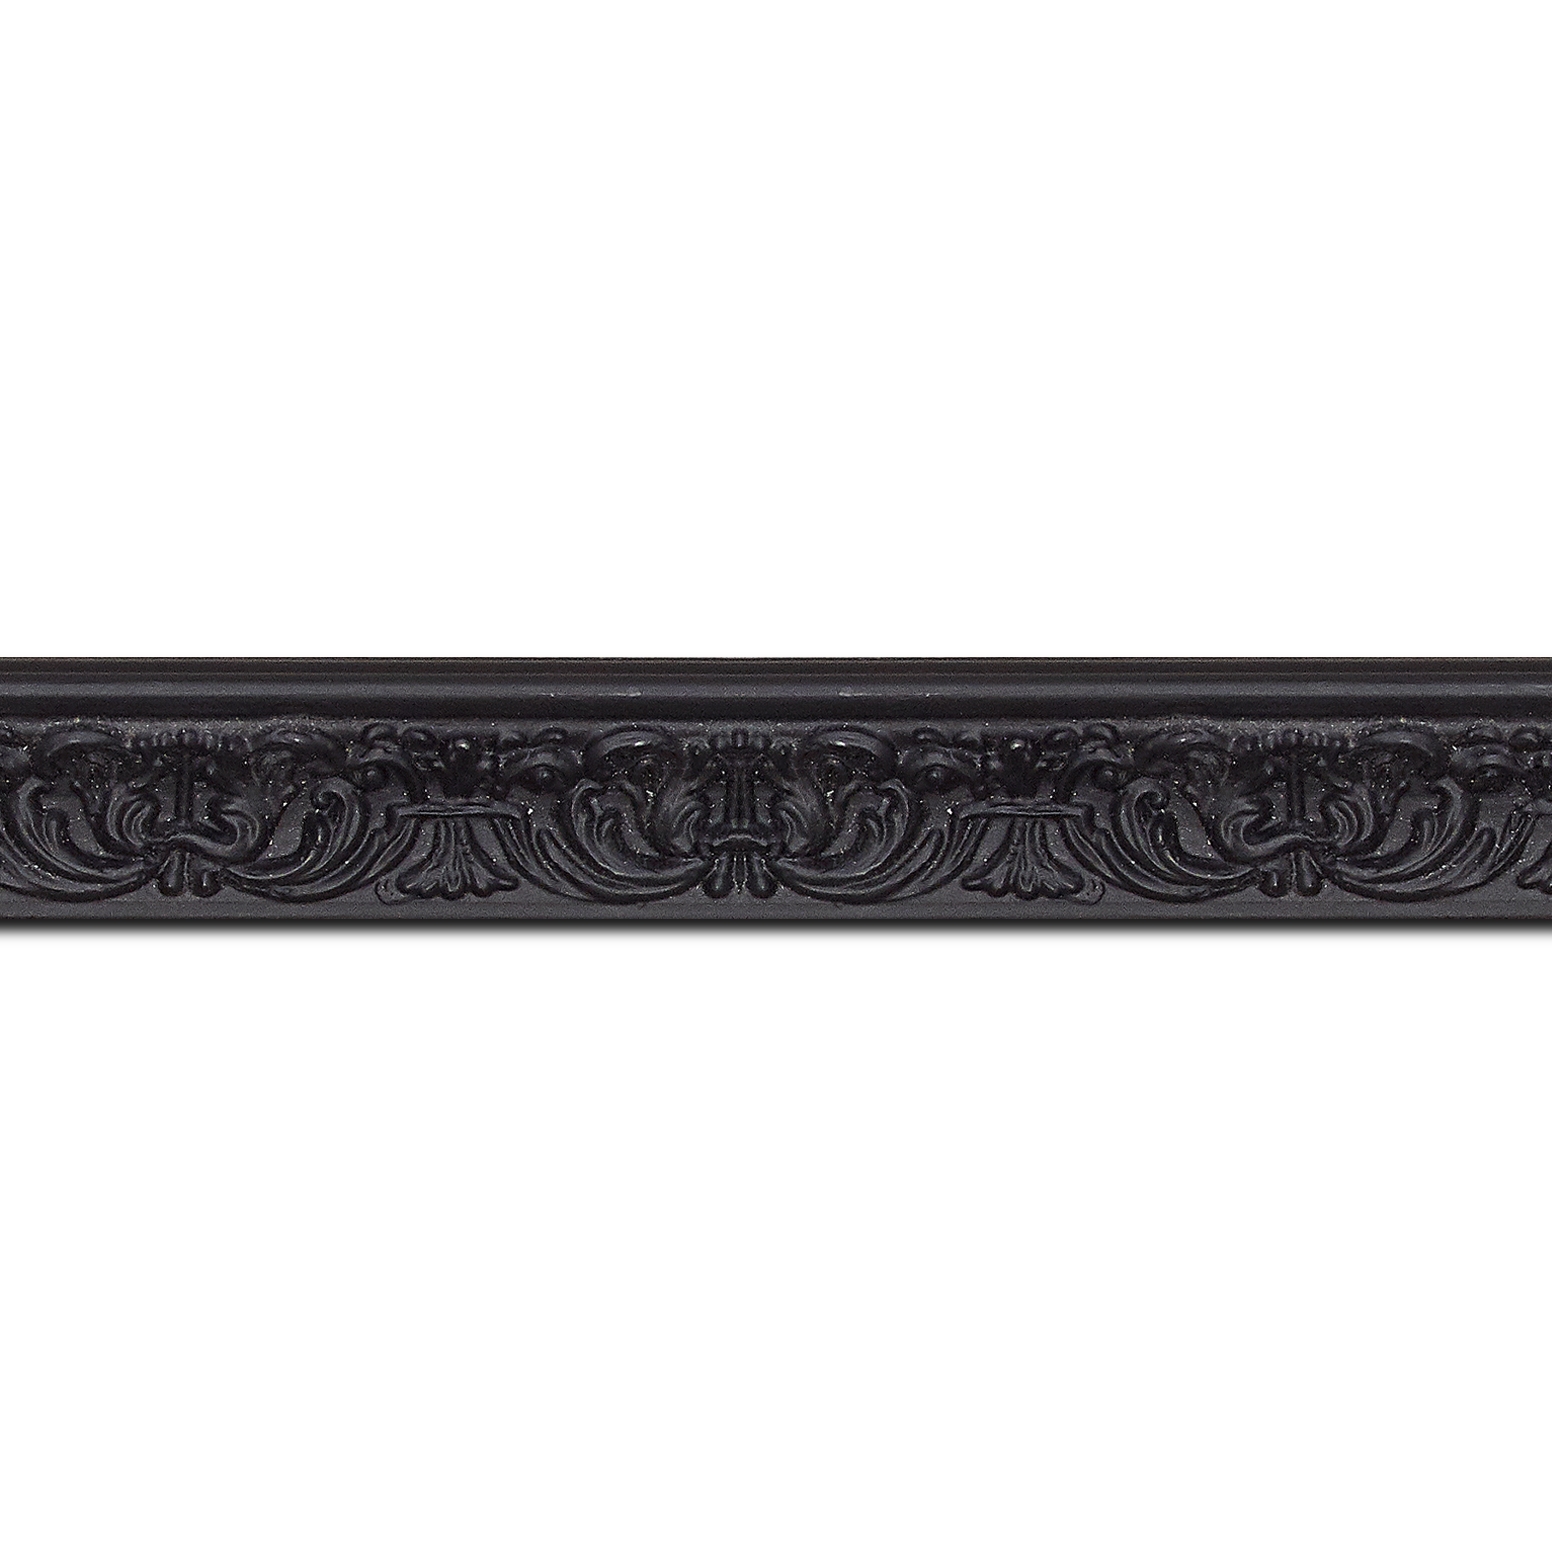 Baguette longueur 1.40m bois profil incurvé largeur 2.6cm couleur noir en relief sur fond noir